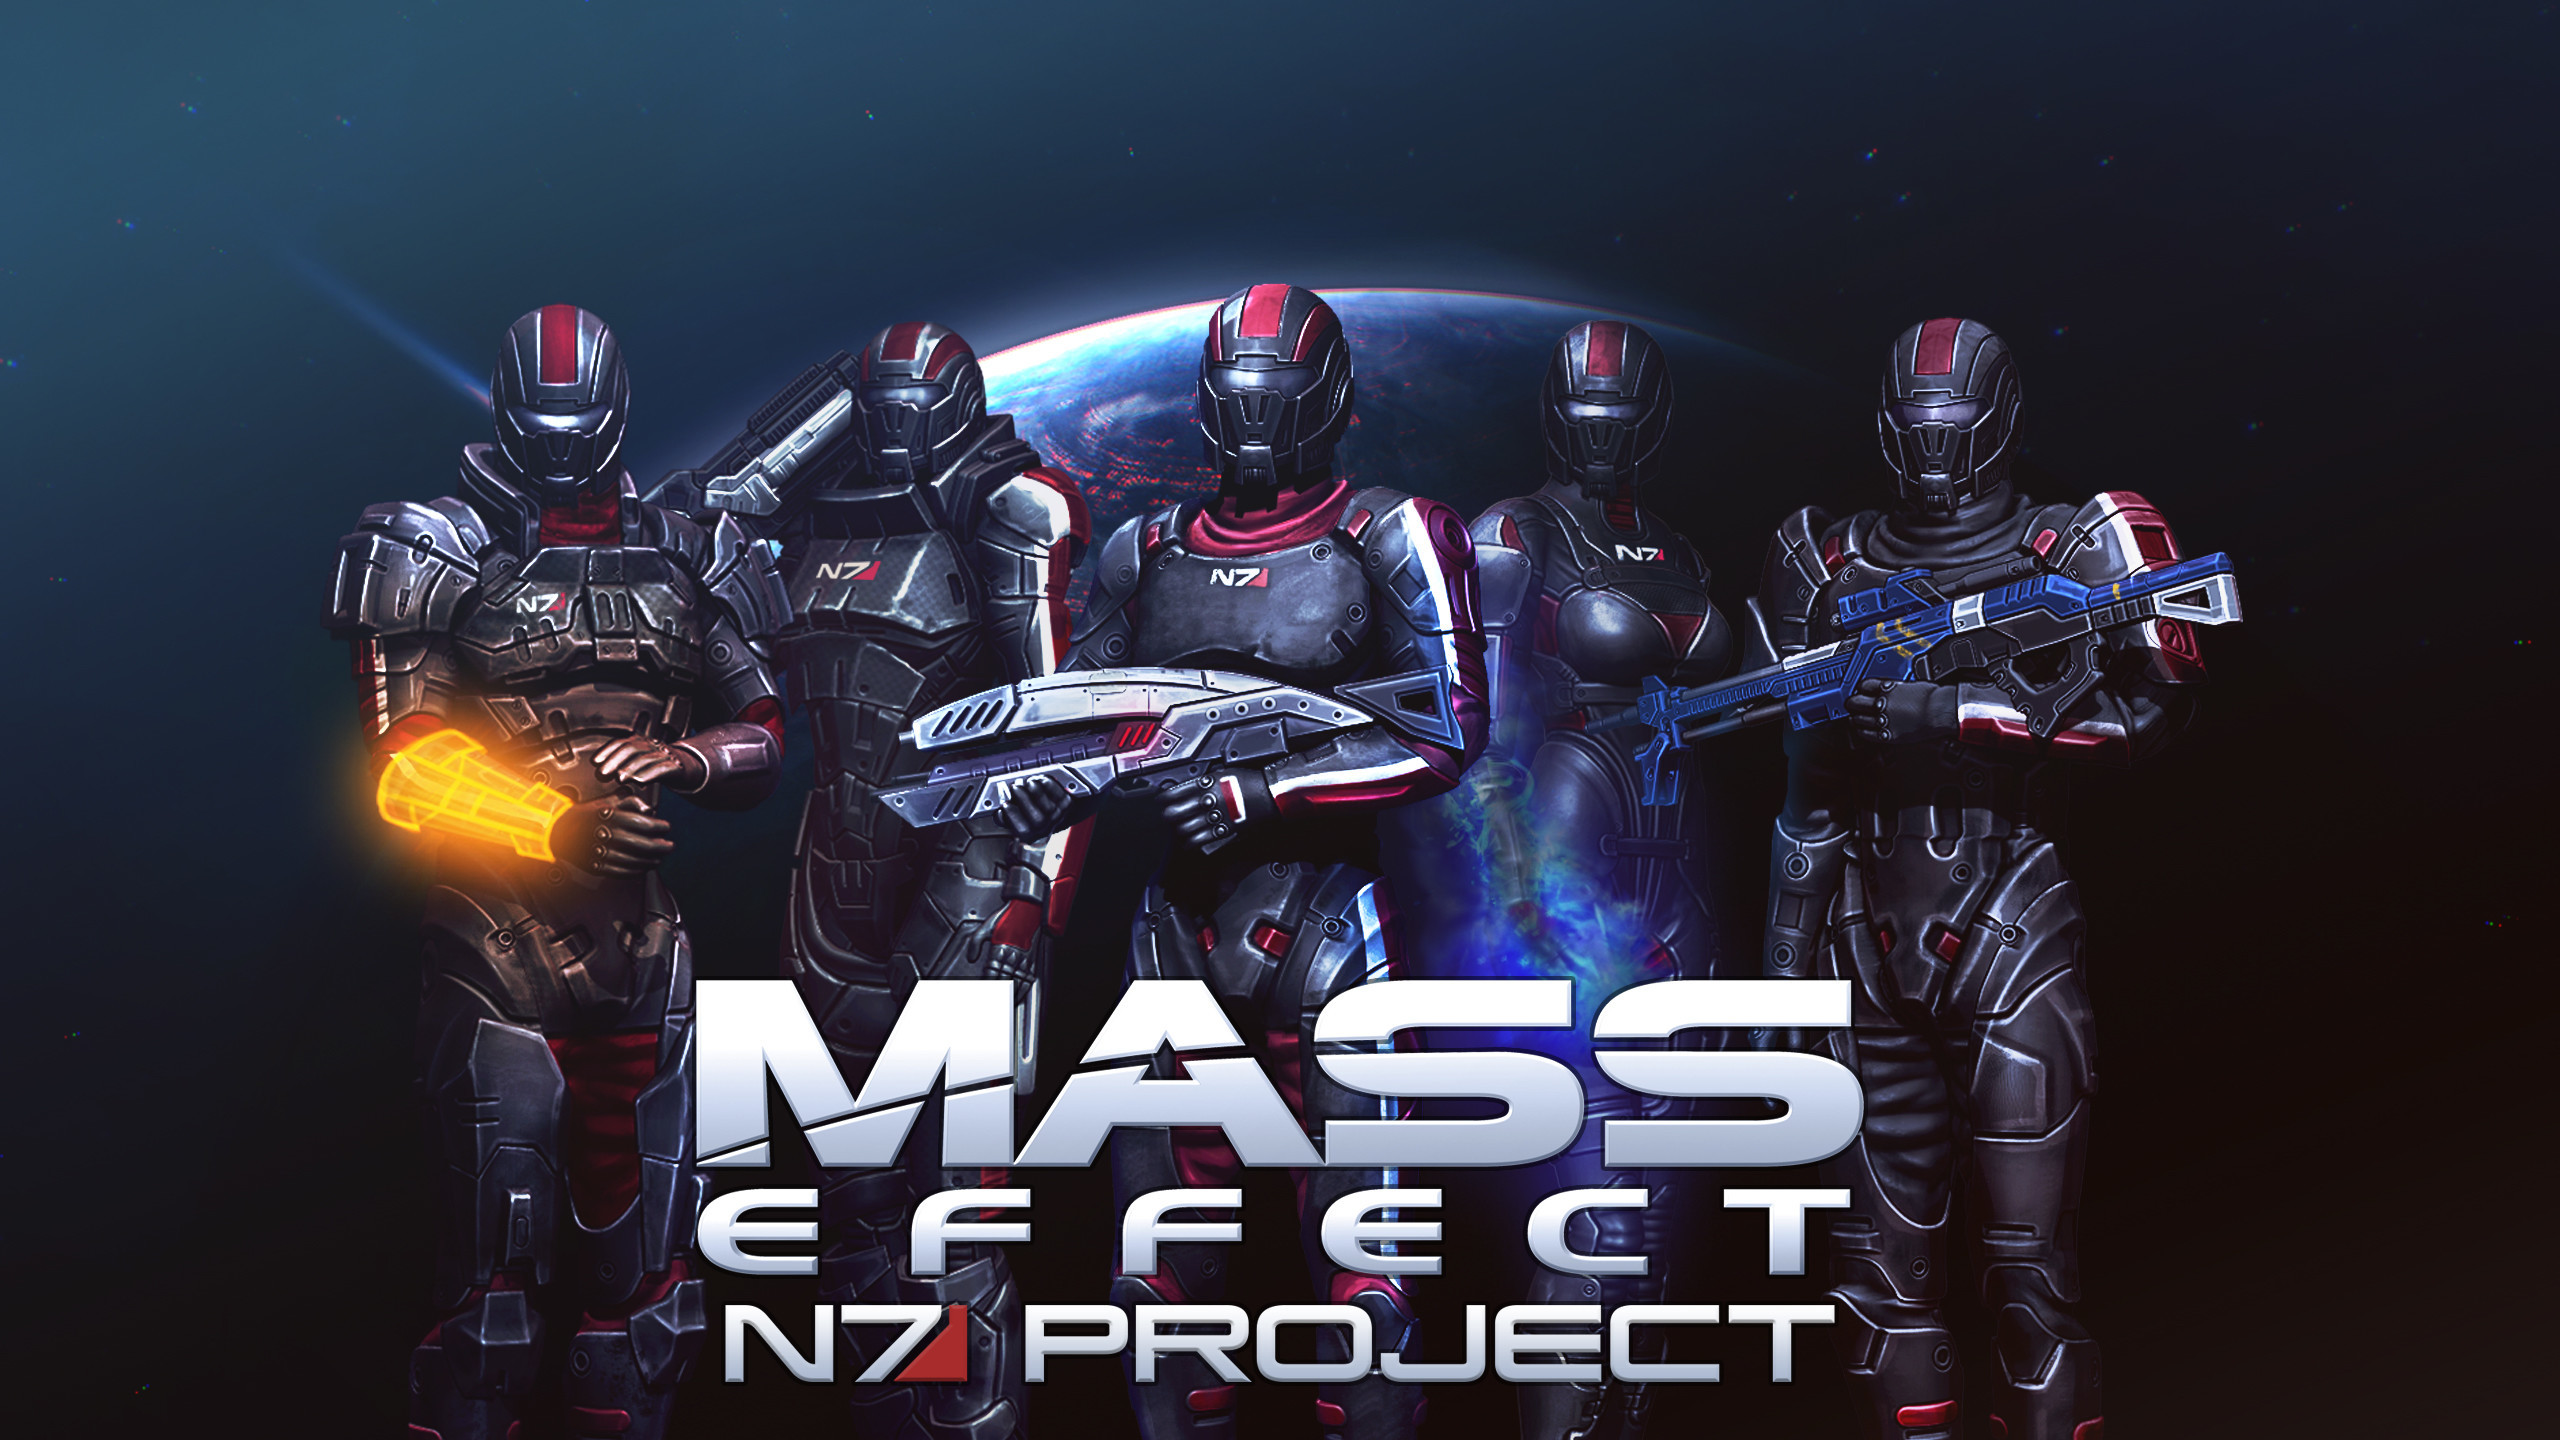 2560x1440 1920x1200 Mass Effect 3 wallpaper